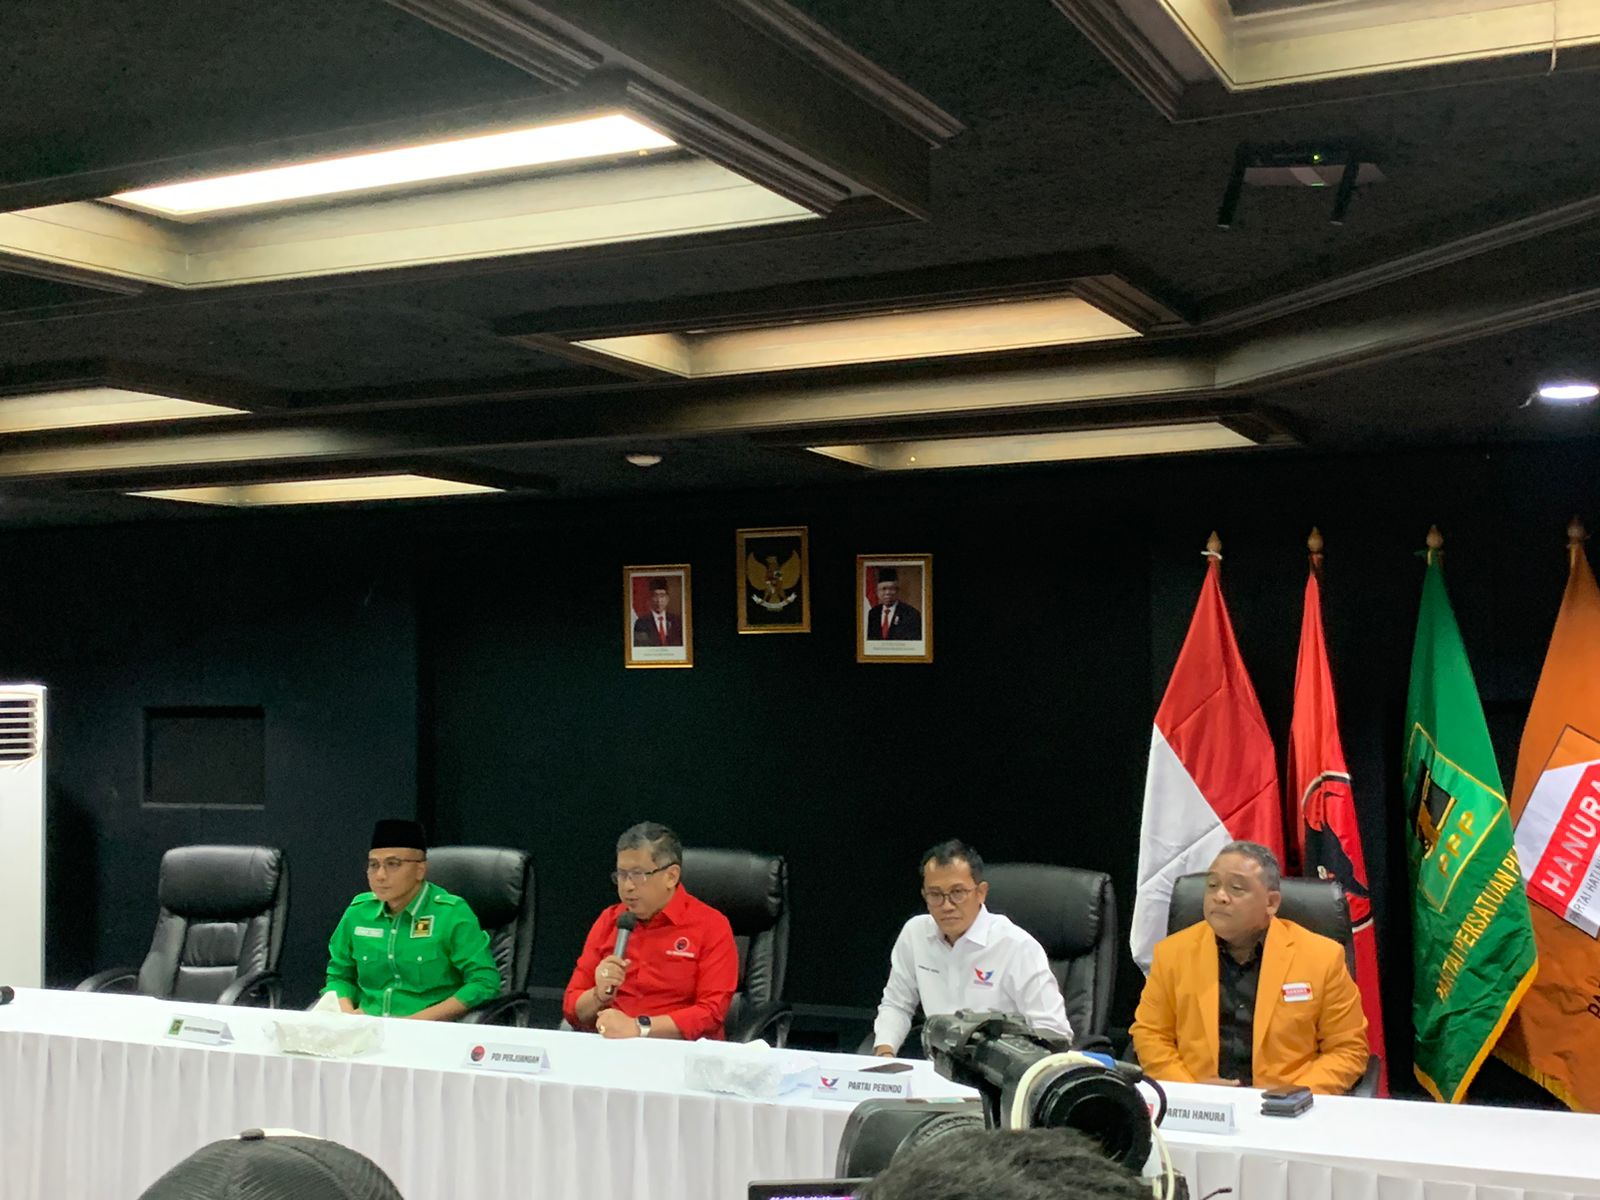 Anggota Tim Pemenangan Nasional Diungkap Hasto Kristiyanto: Dari Profesional Hingga Elite Partai 